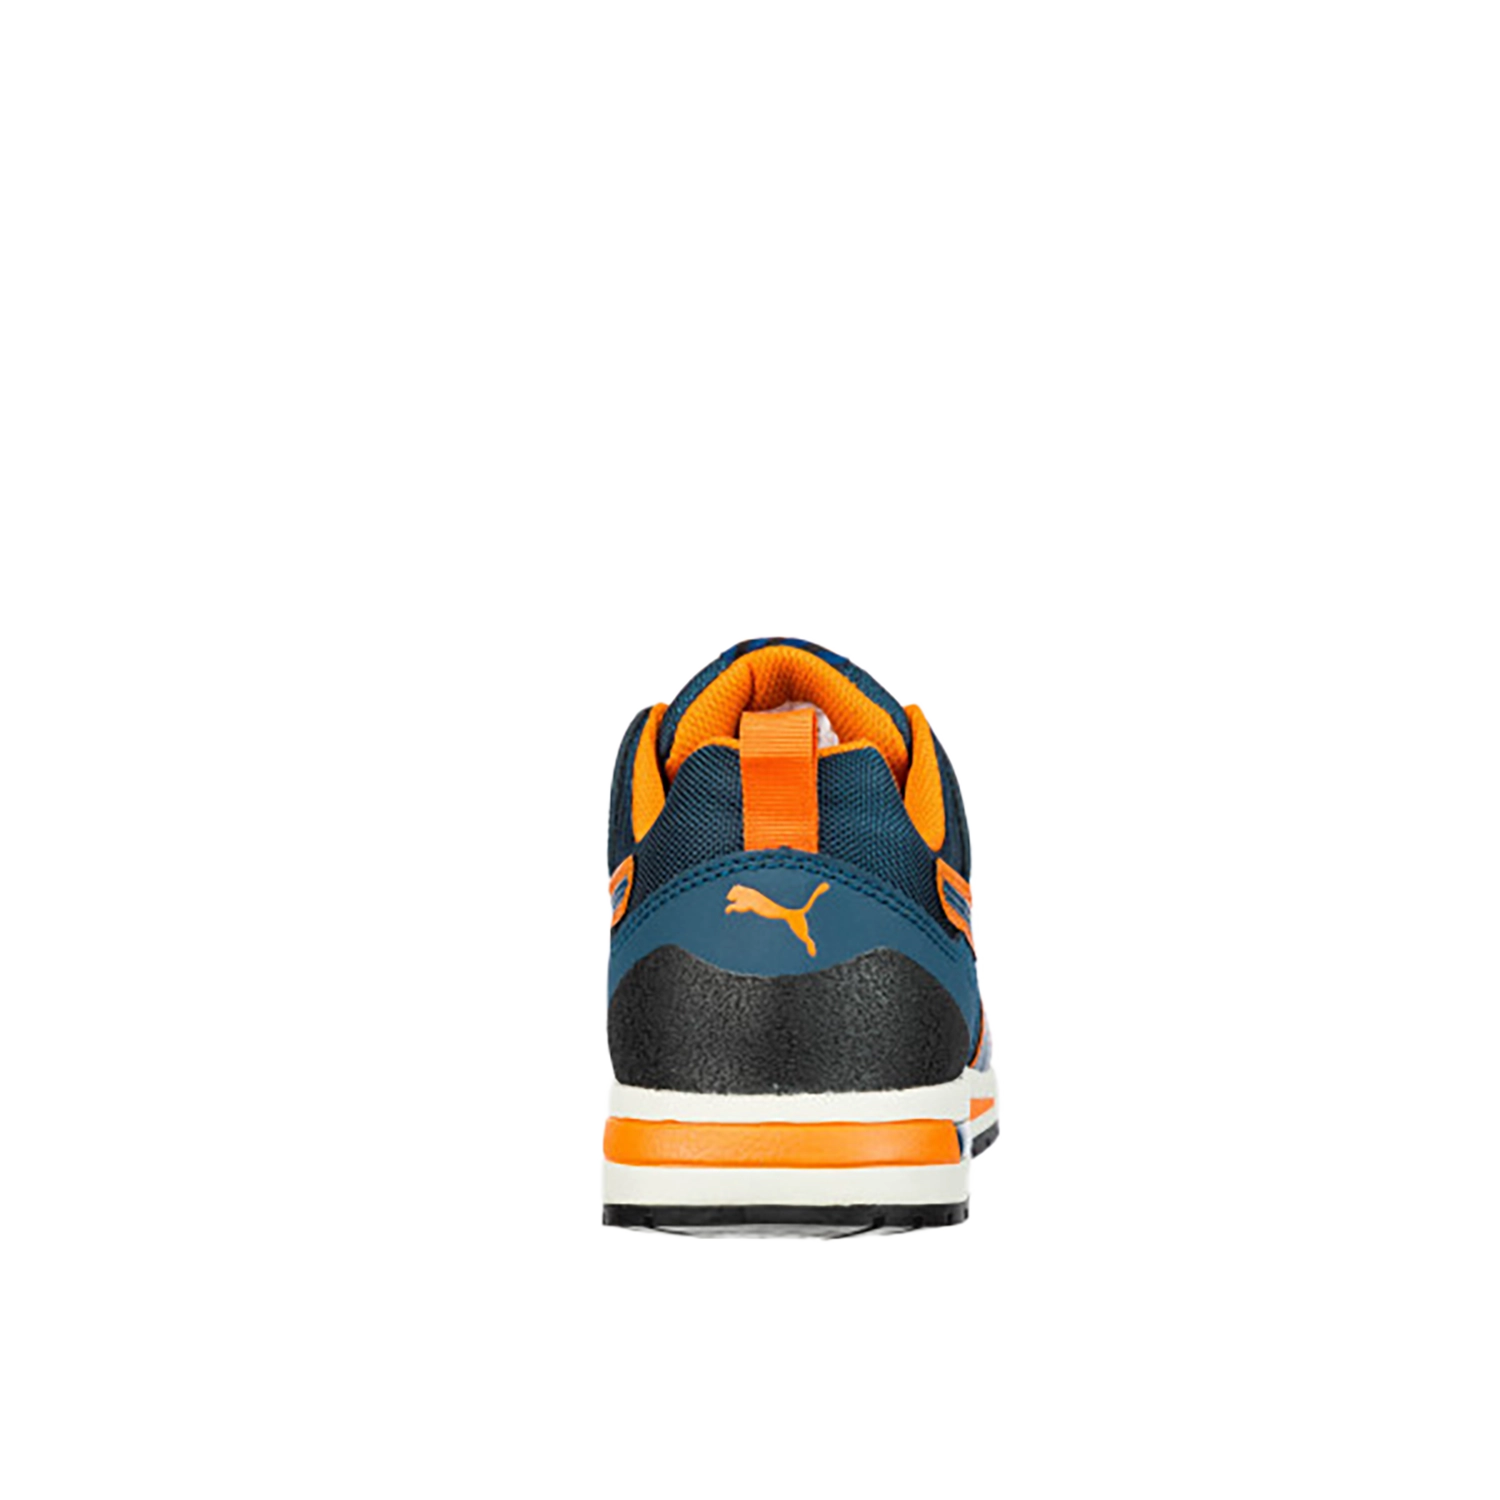 Chaussures de sécurité basse CrossTwist Low S3 HRO SRC - bleu/orange - taille 45